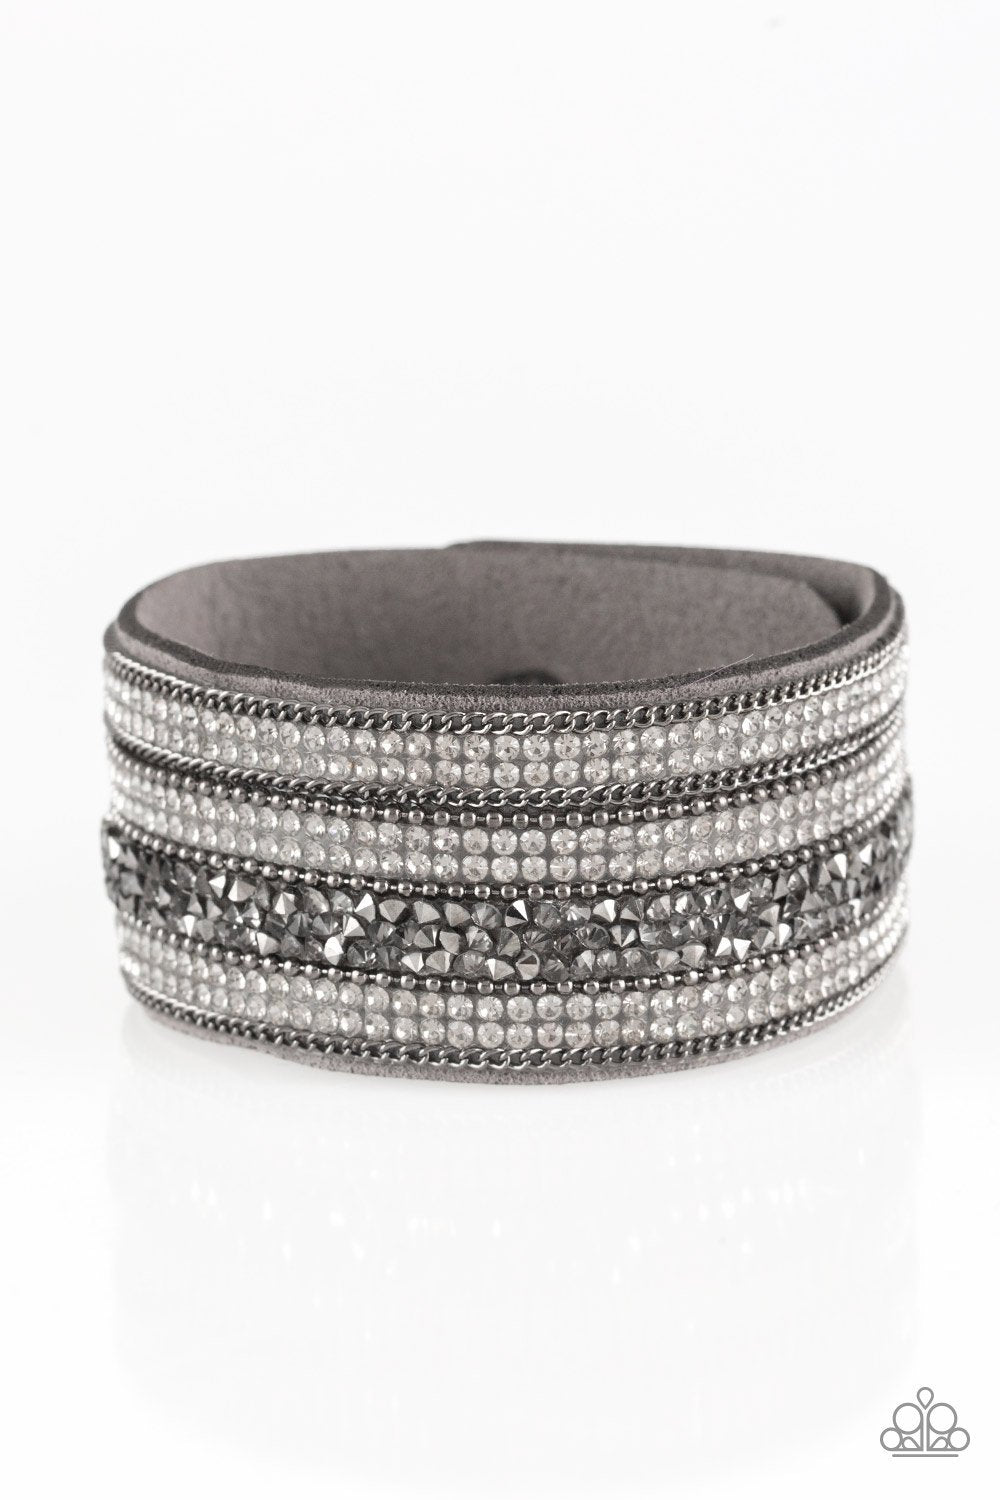 Really Rock Band Silver Wrap Bracelet - Daria's Blings N Things